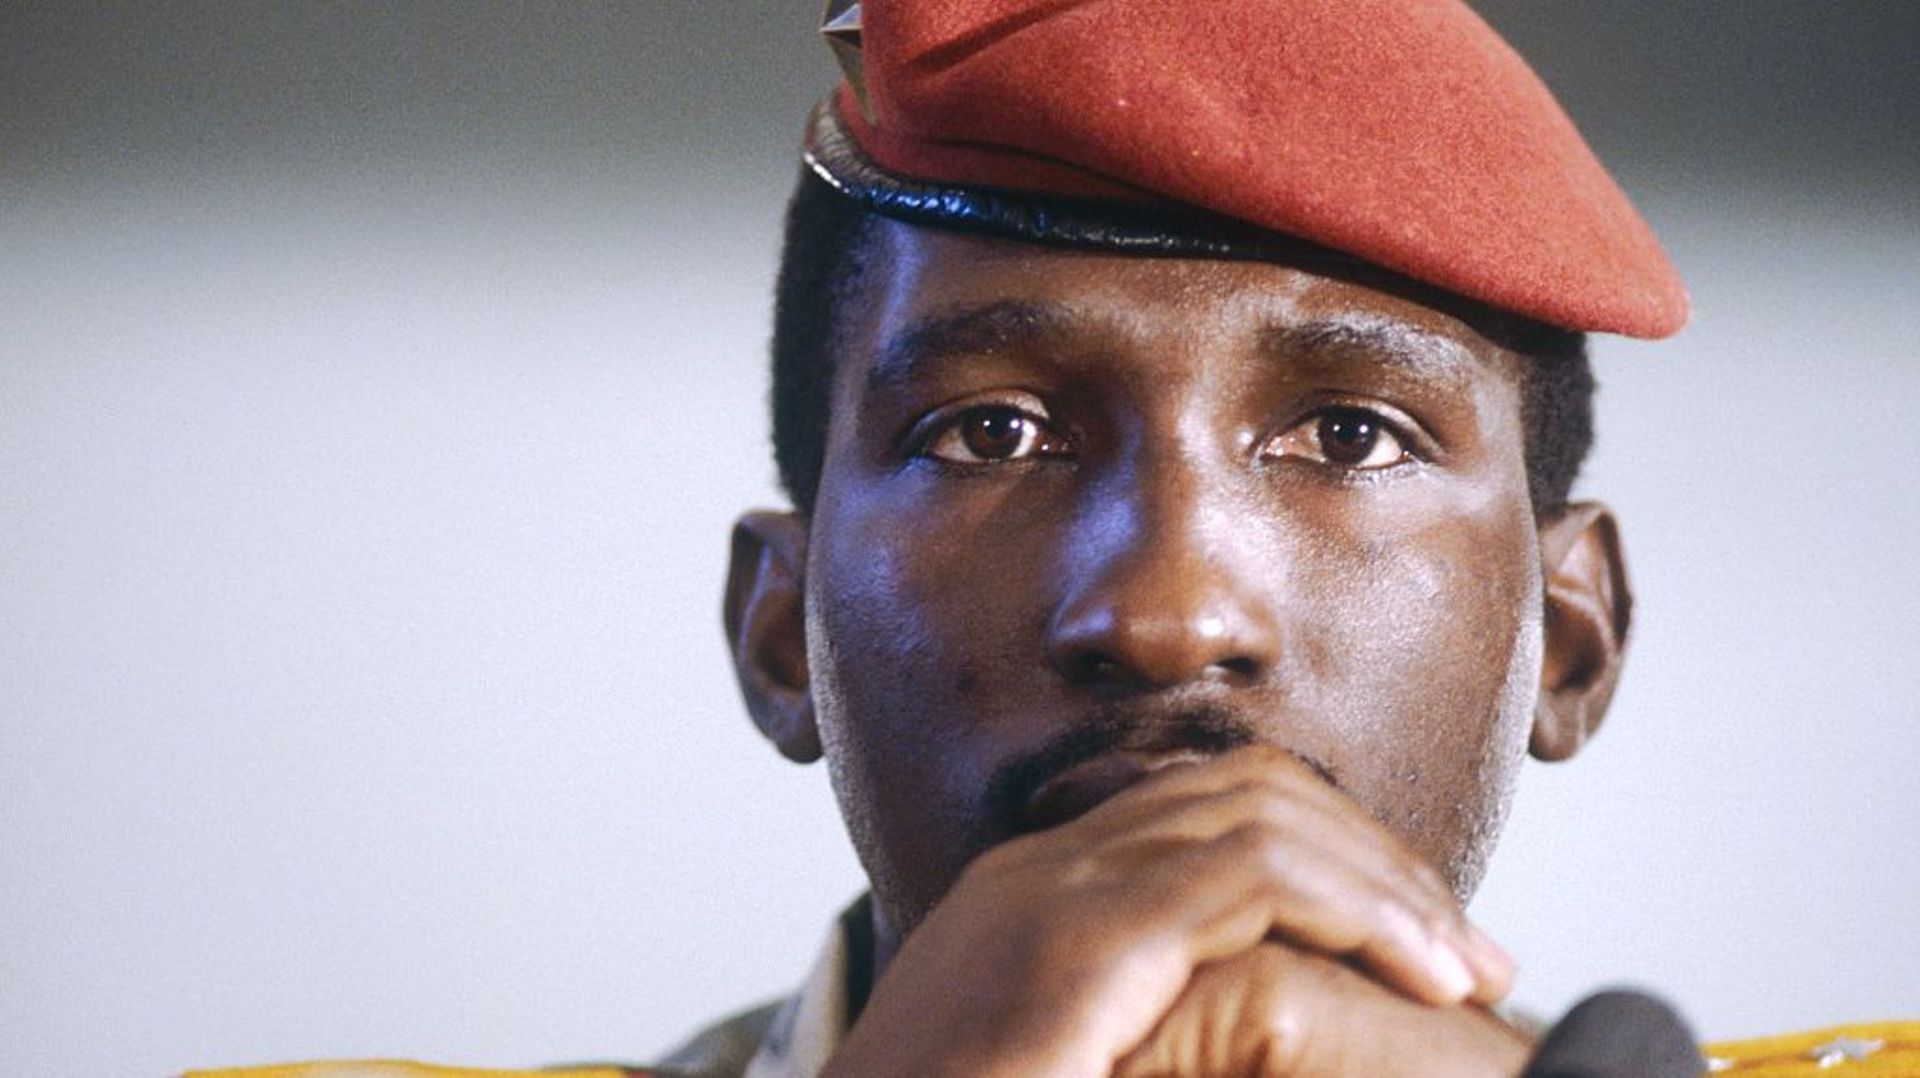 Le leader de la révolution burkinabè, Thomas Sankara, au 8e sommet du Mouvement des non-alignés en 1983.